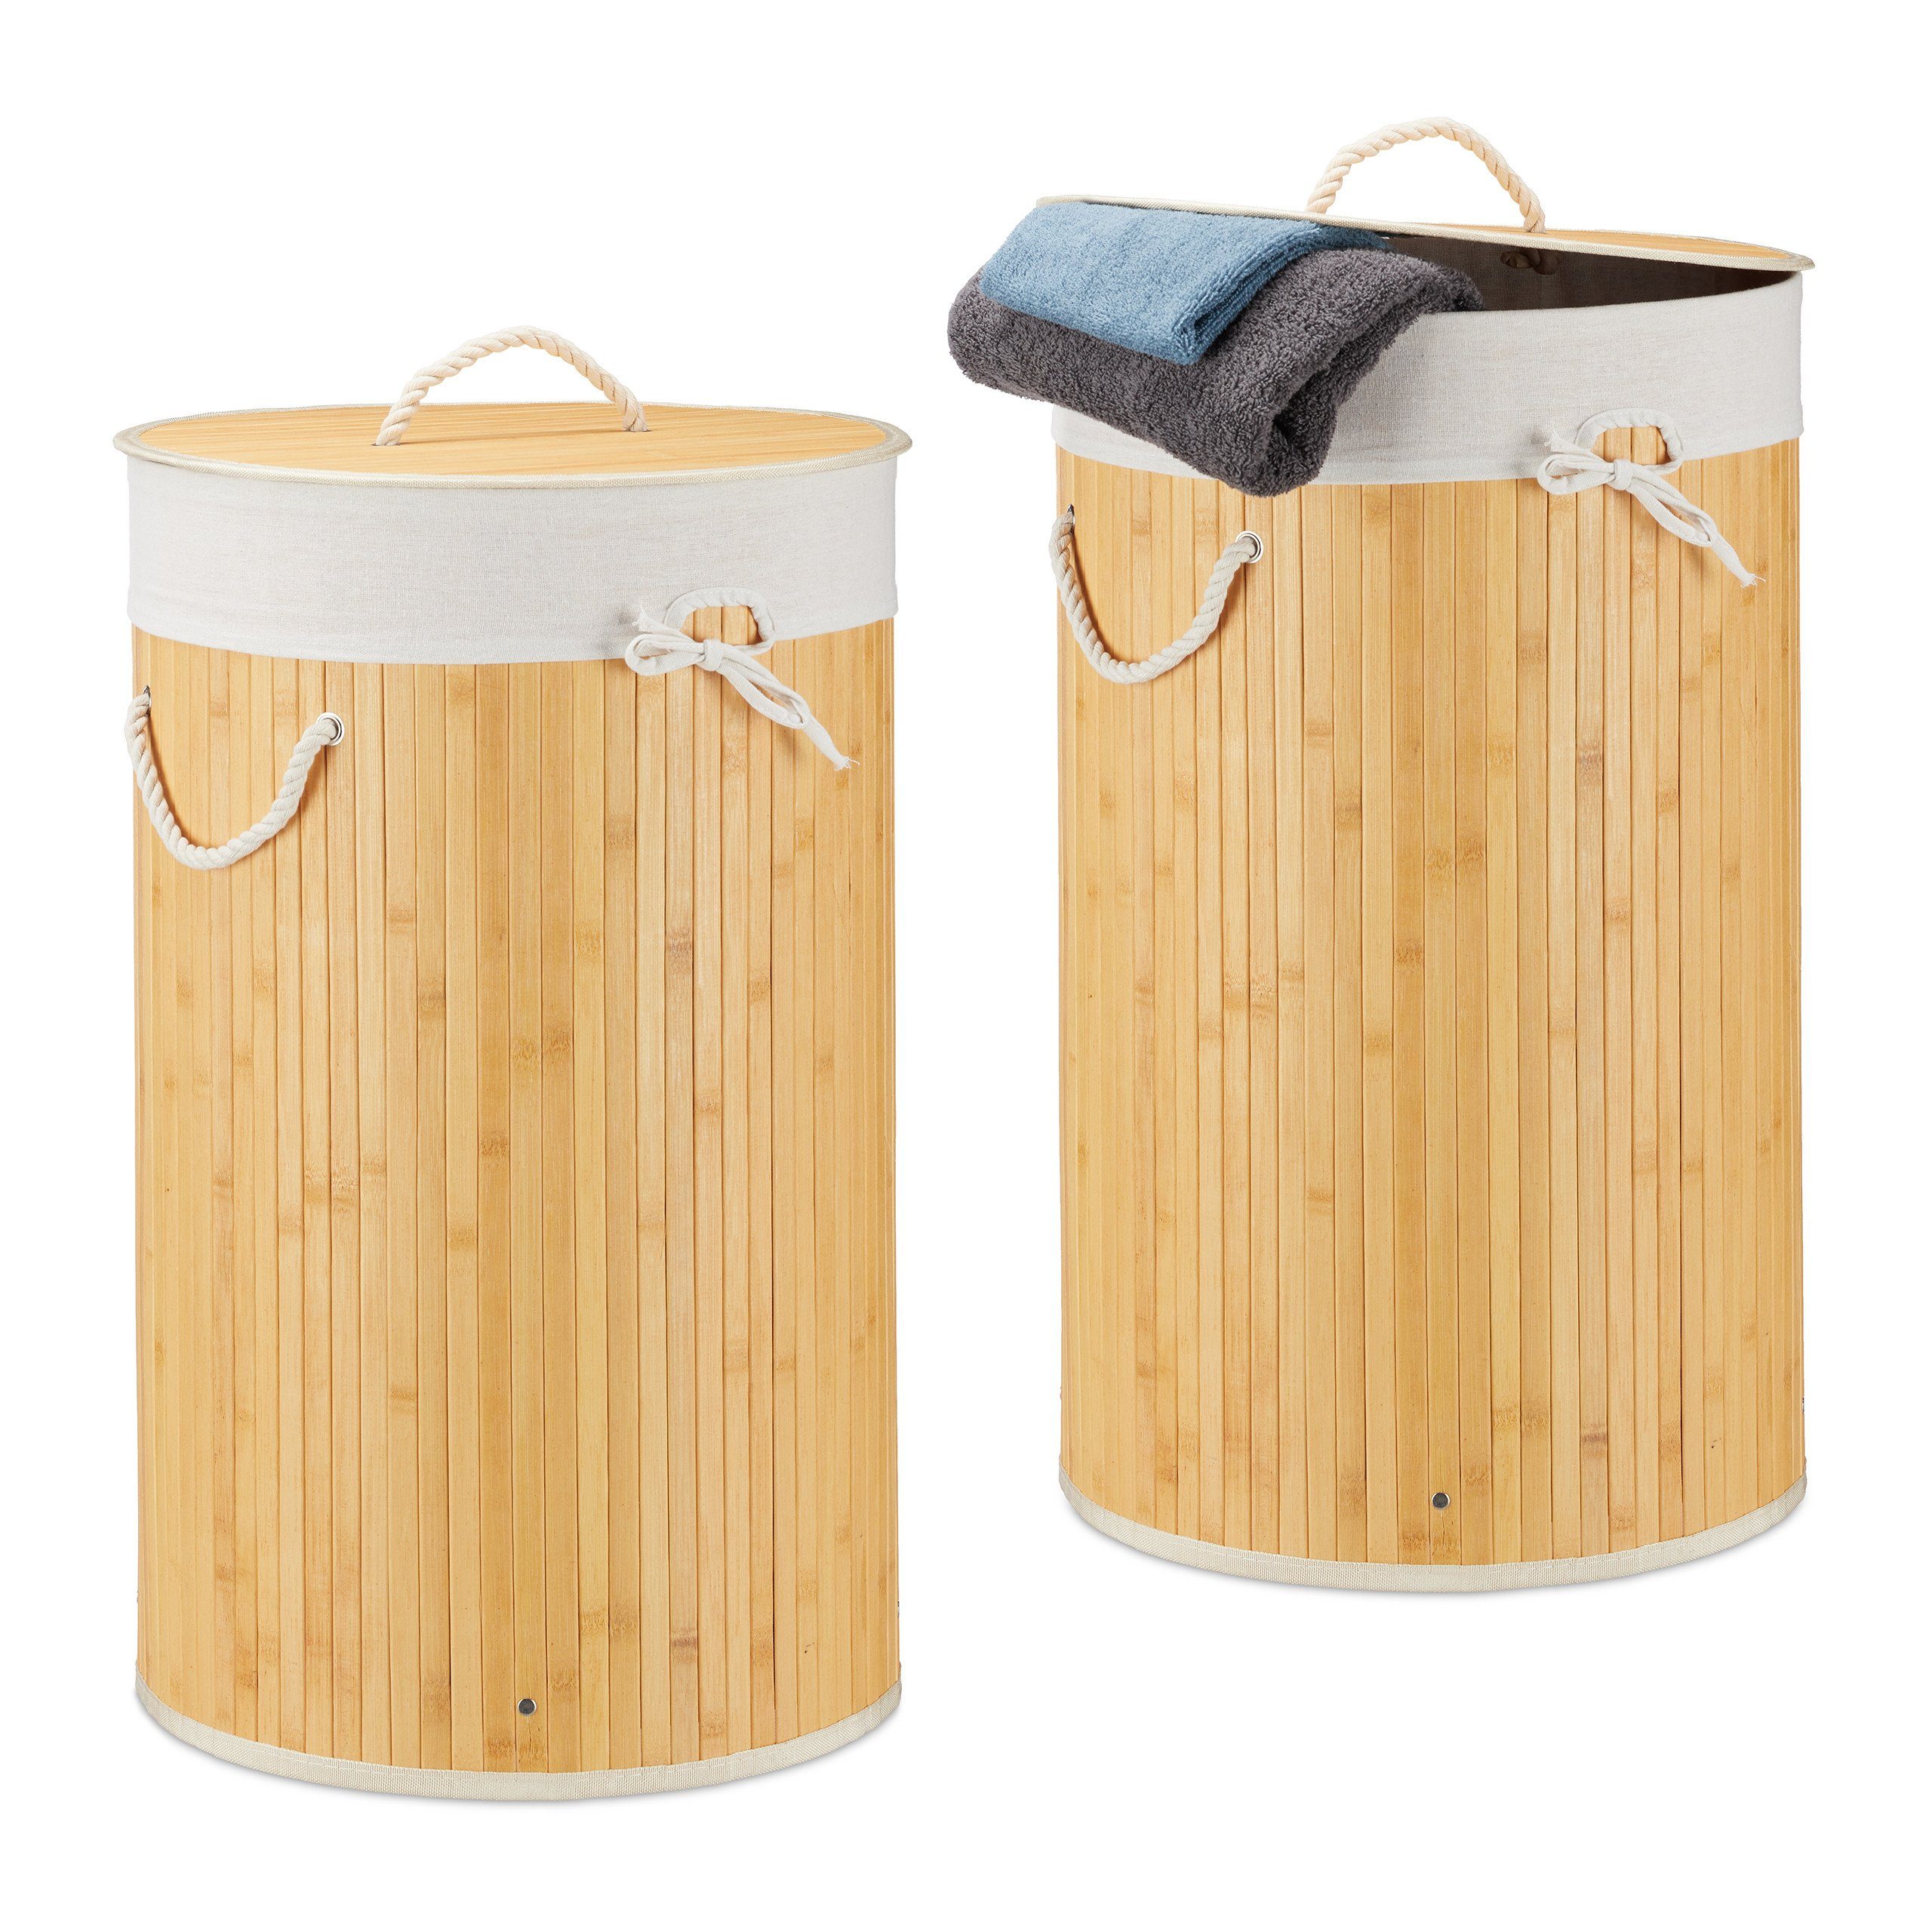 relaxdays Wäschekorb »2 x Wäschekorb Bambus rund creme« online kaufen | OTTO